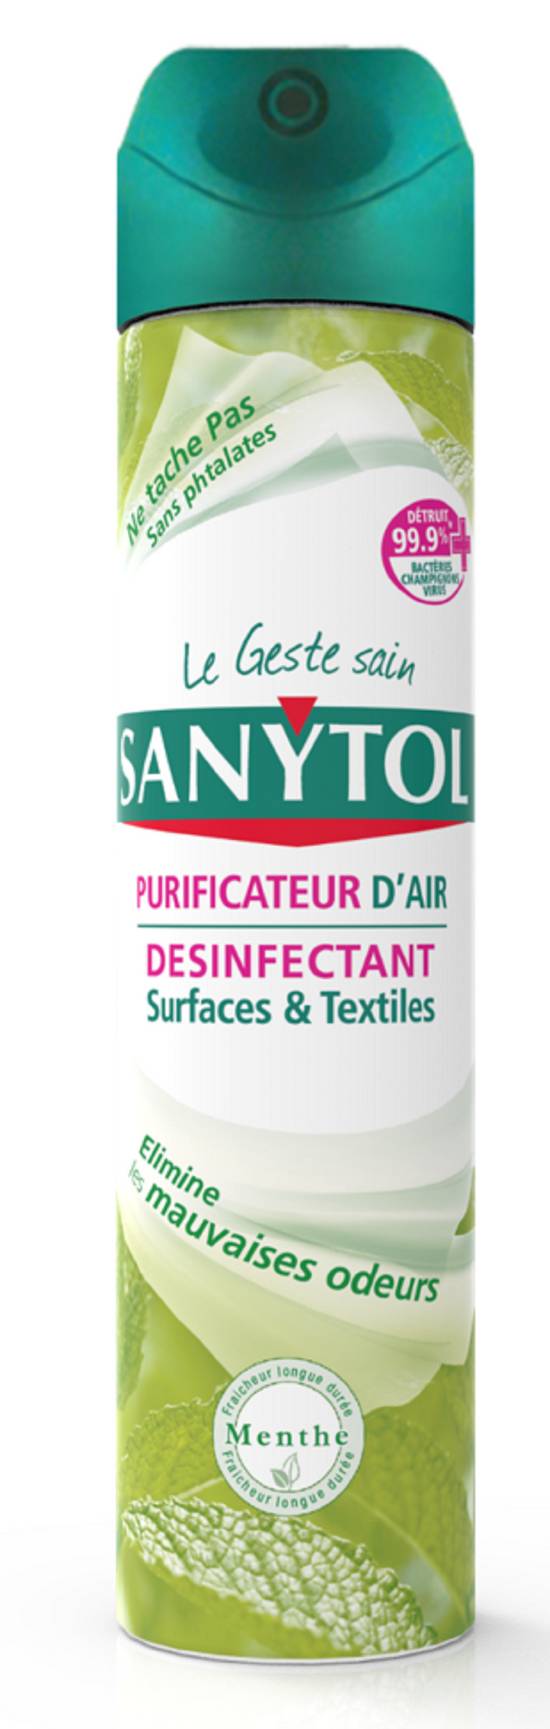 Sanytol - Purificateur d'air désinfectant surfaces et textiles menthe